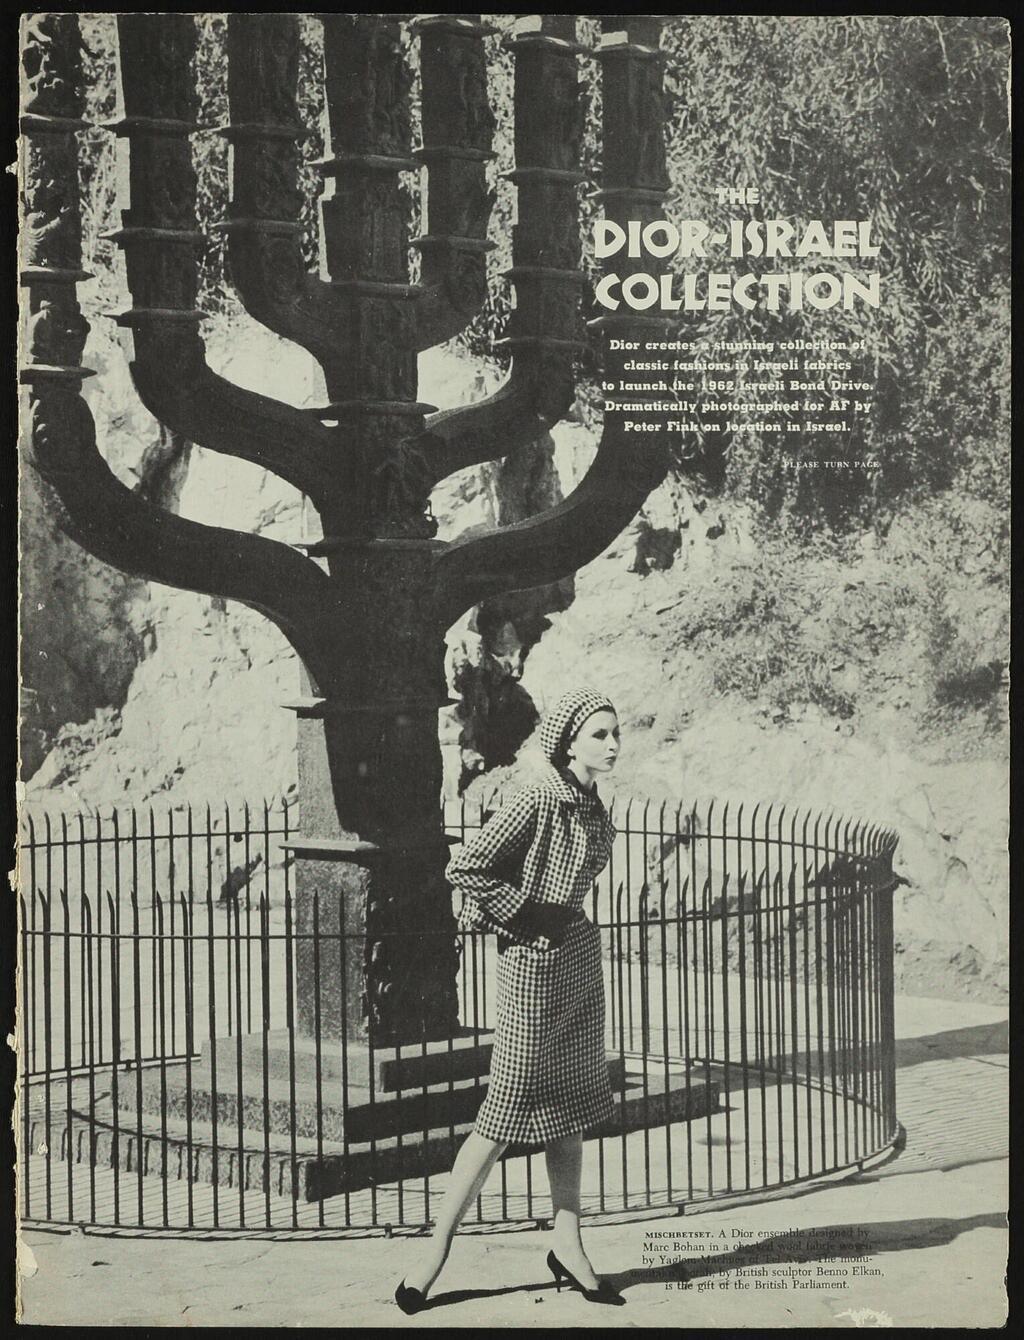 כתבת מגזין אמריקני על קולקציית דיור-ישראל, 1962. מתוך התערוכה "משכית 70/30/10"